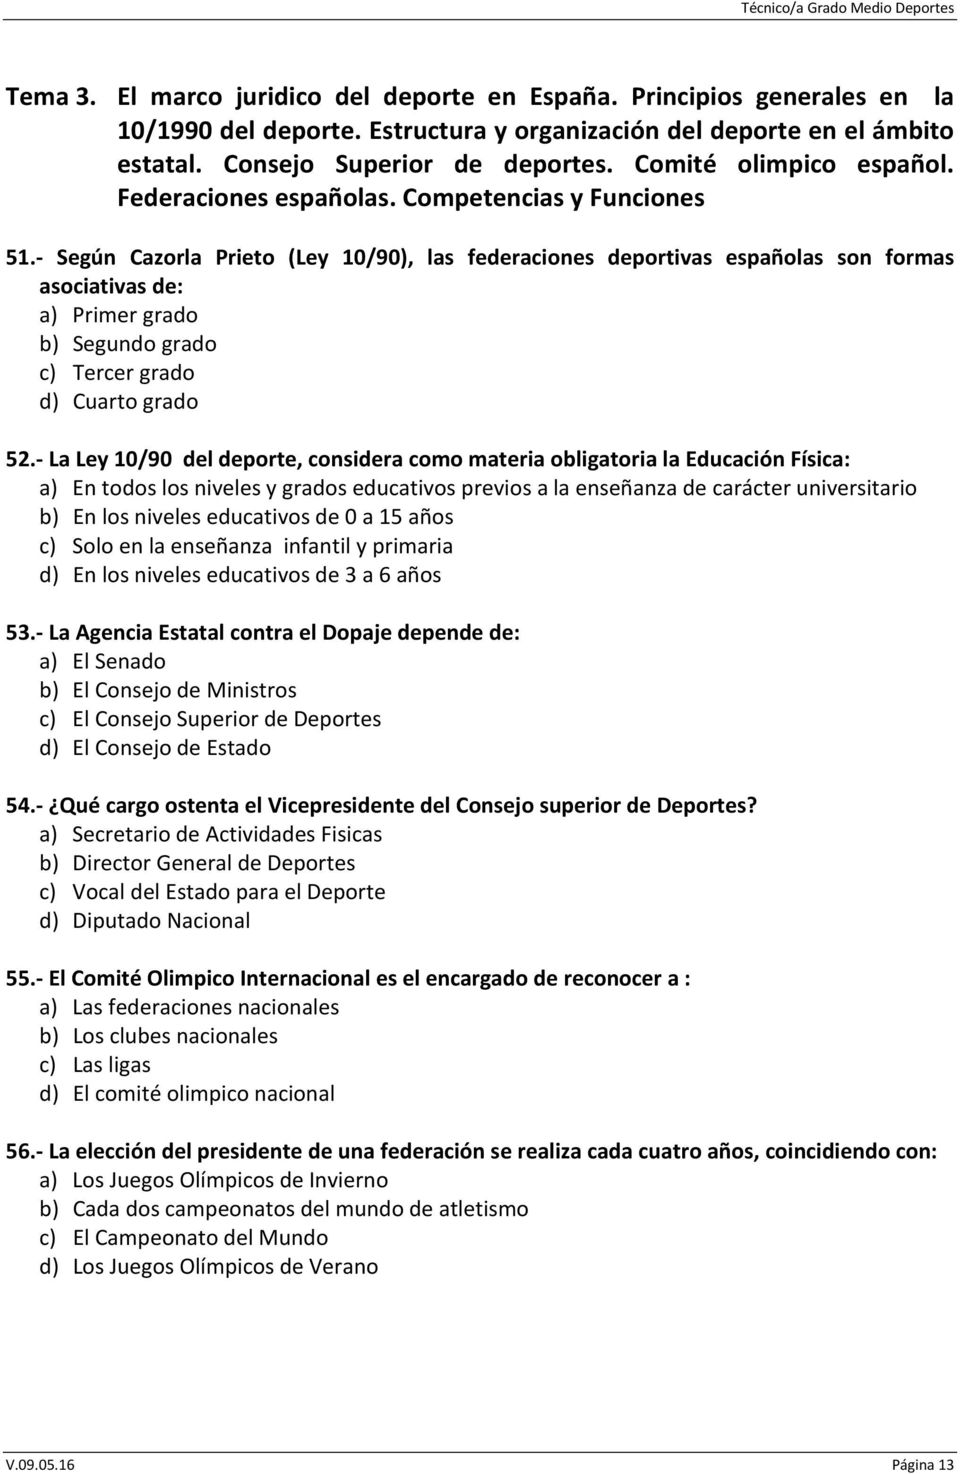 - Según Cazorla Prieto (Ley 10/90), las federaciones deportivas españolas son formas asociativas de: a) Primer grado b) Segundo grado c) Tercer grado d) Cuarto grado 52.